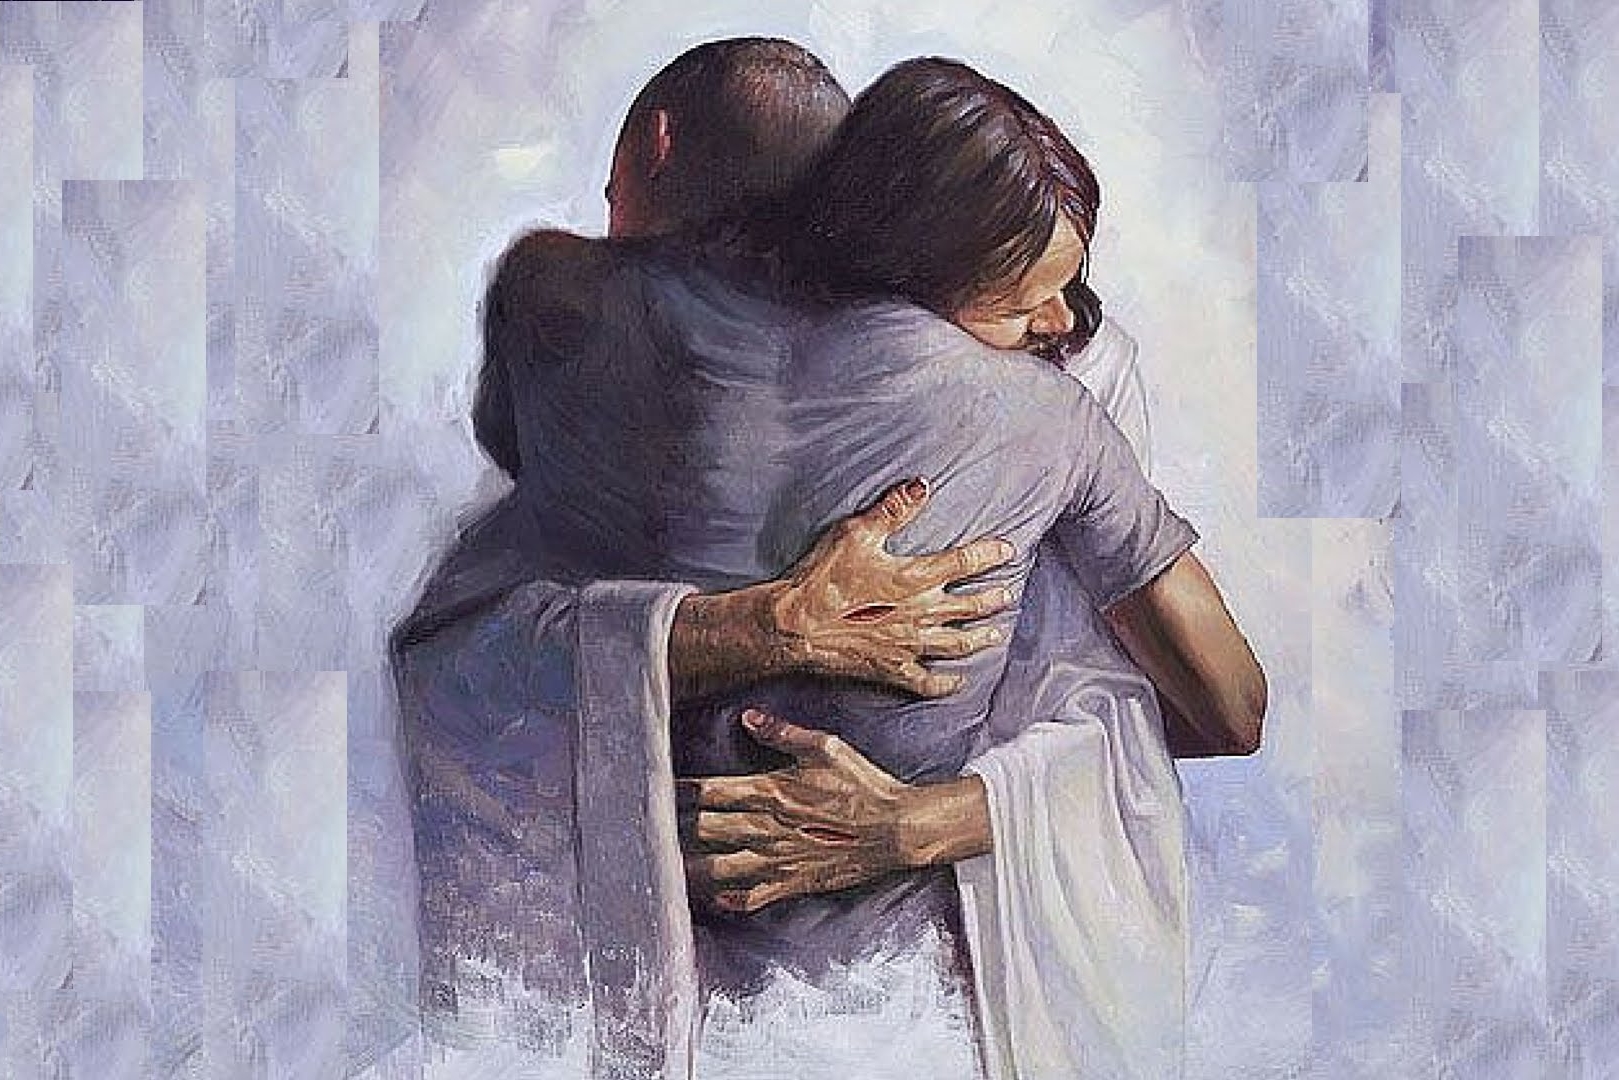 abrazo con jesus experiencia cercana a la muerte.